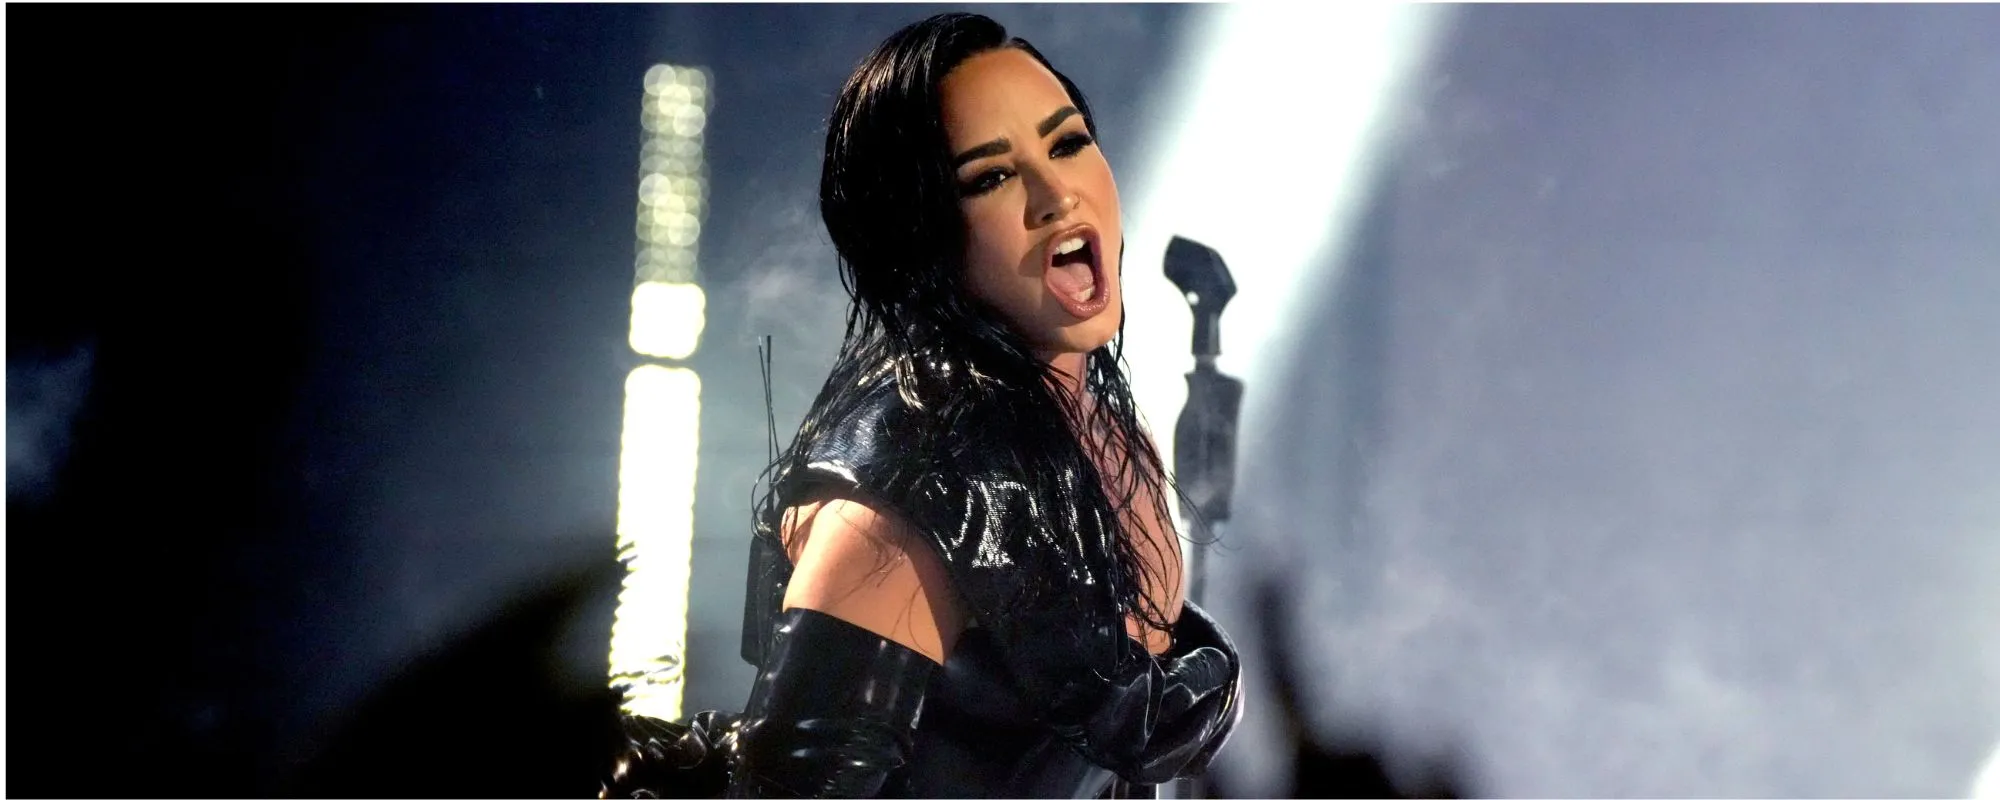 Demi Lovato Rocks the MTV VMAs with Biggest Hits